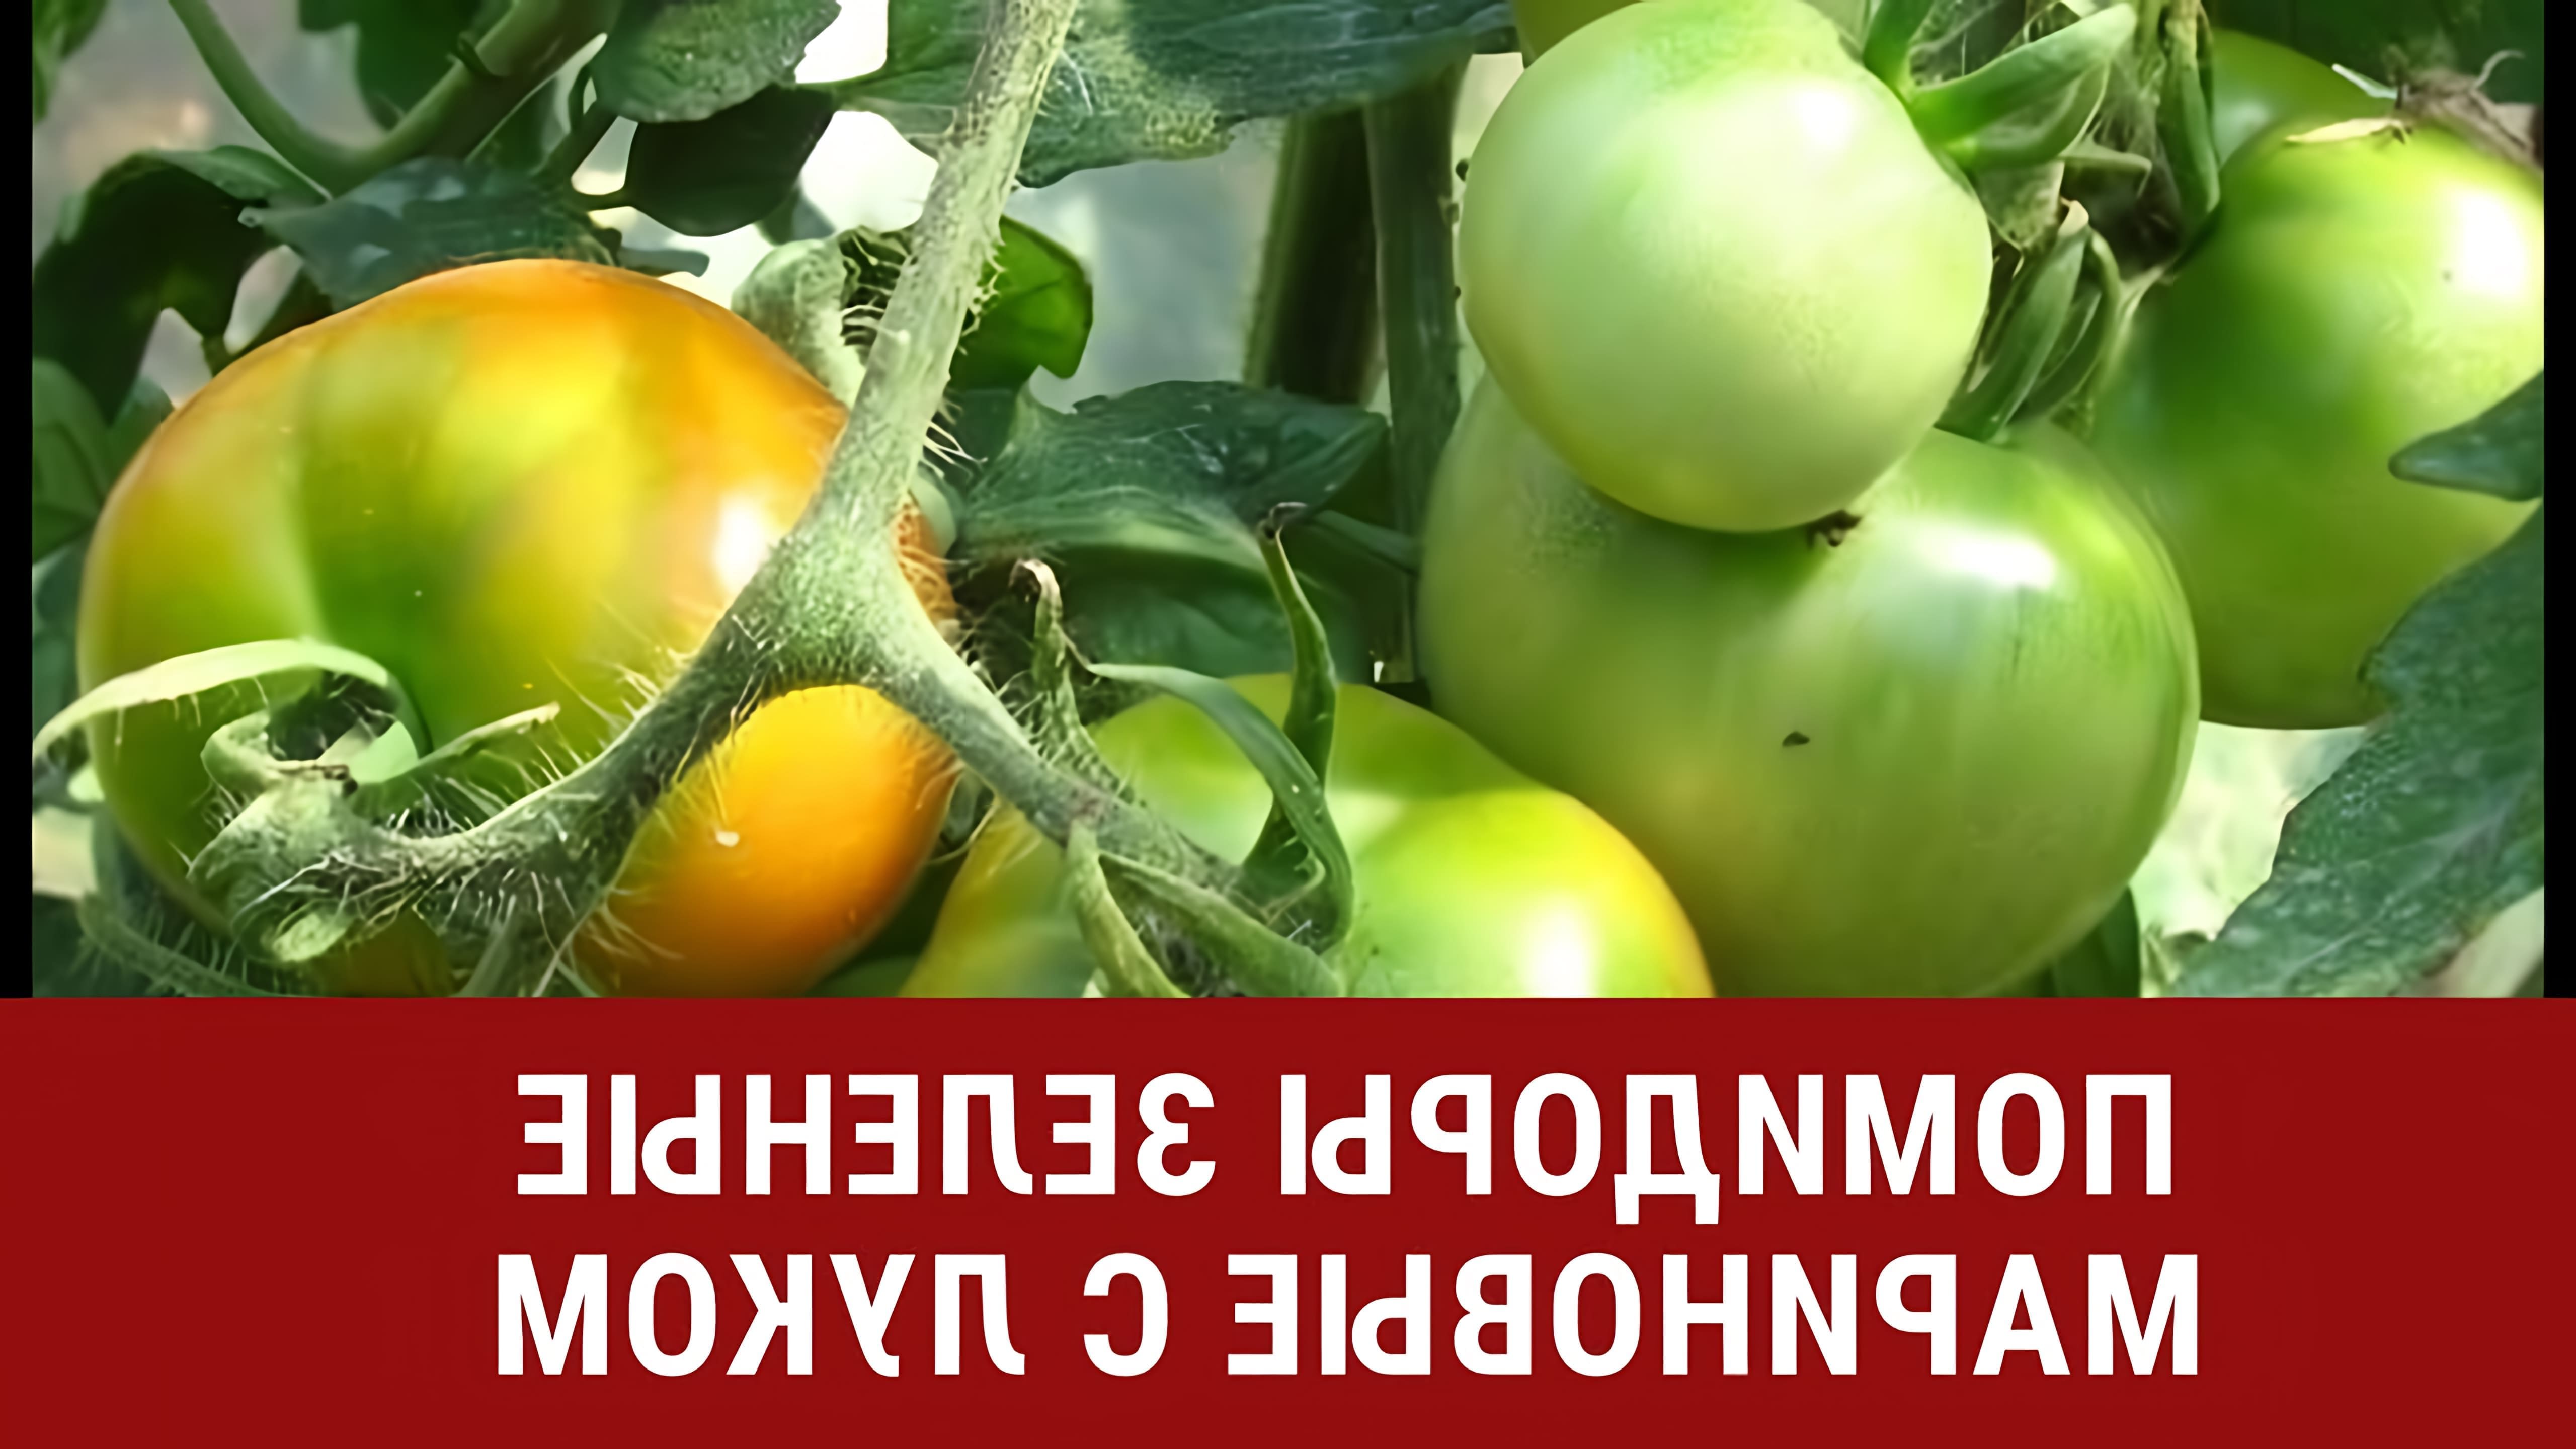 В этом видео демонстрируется процесс приготовления маринованных зеленых помидоров с луком